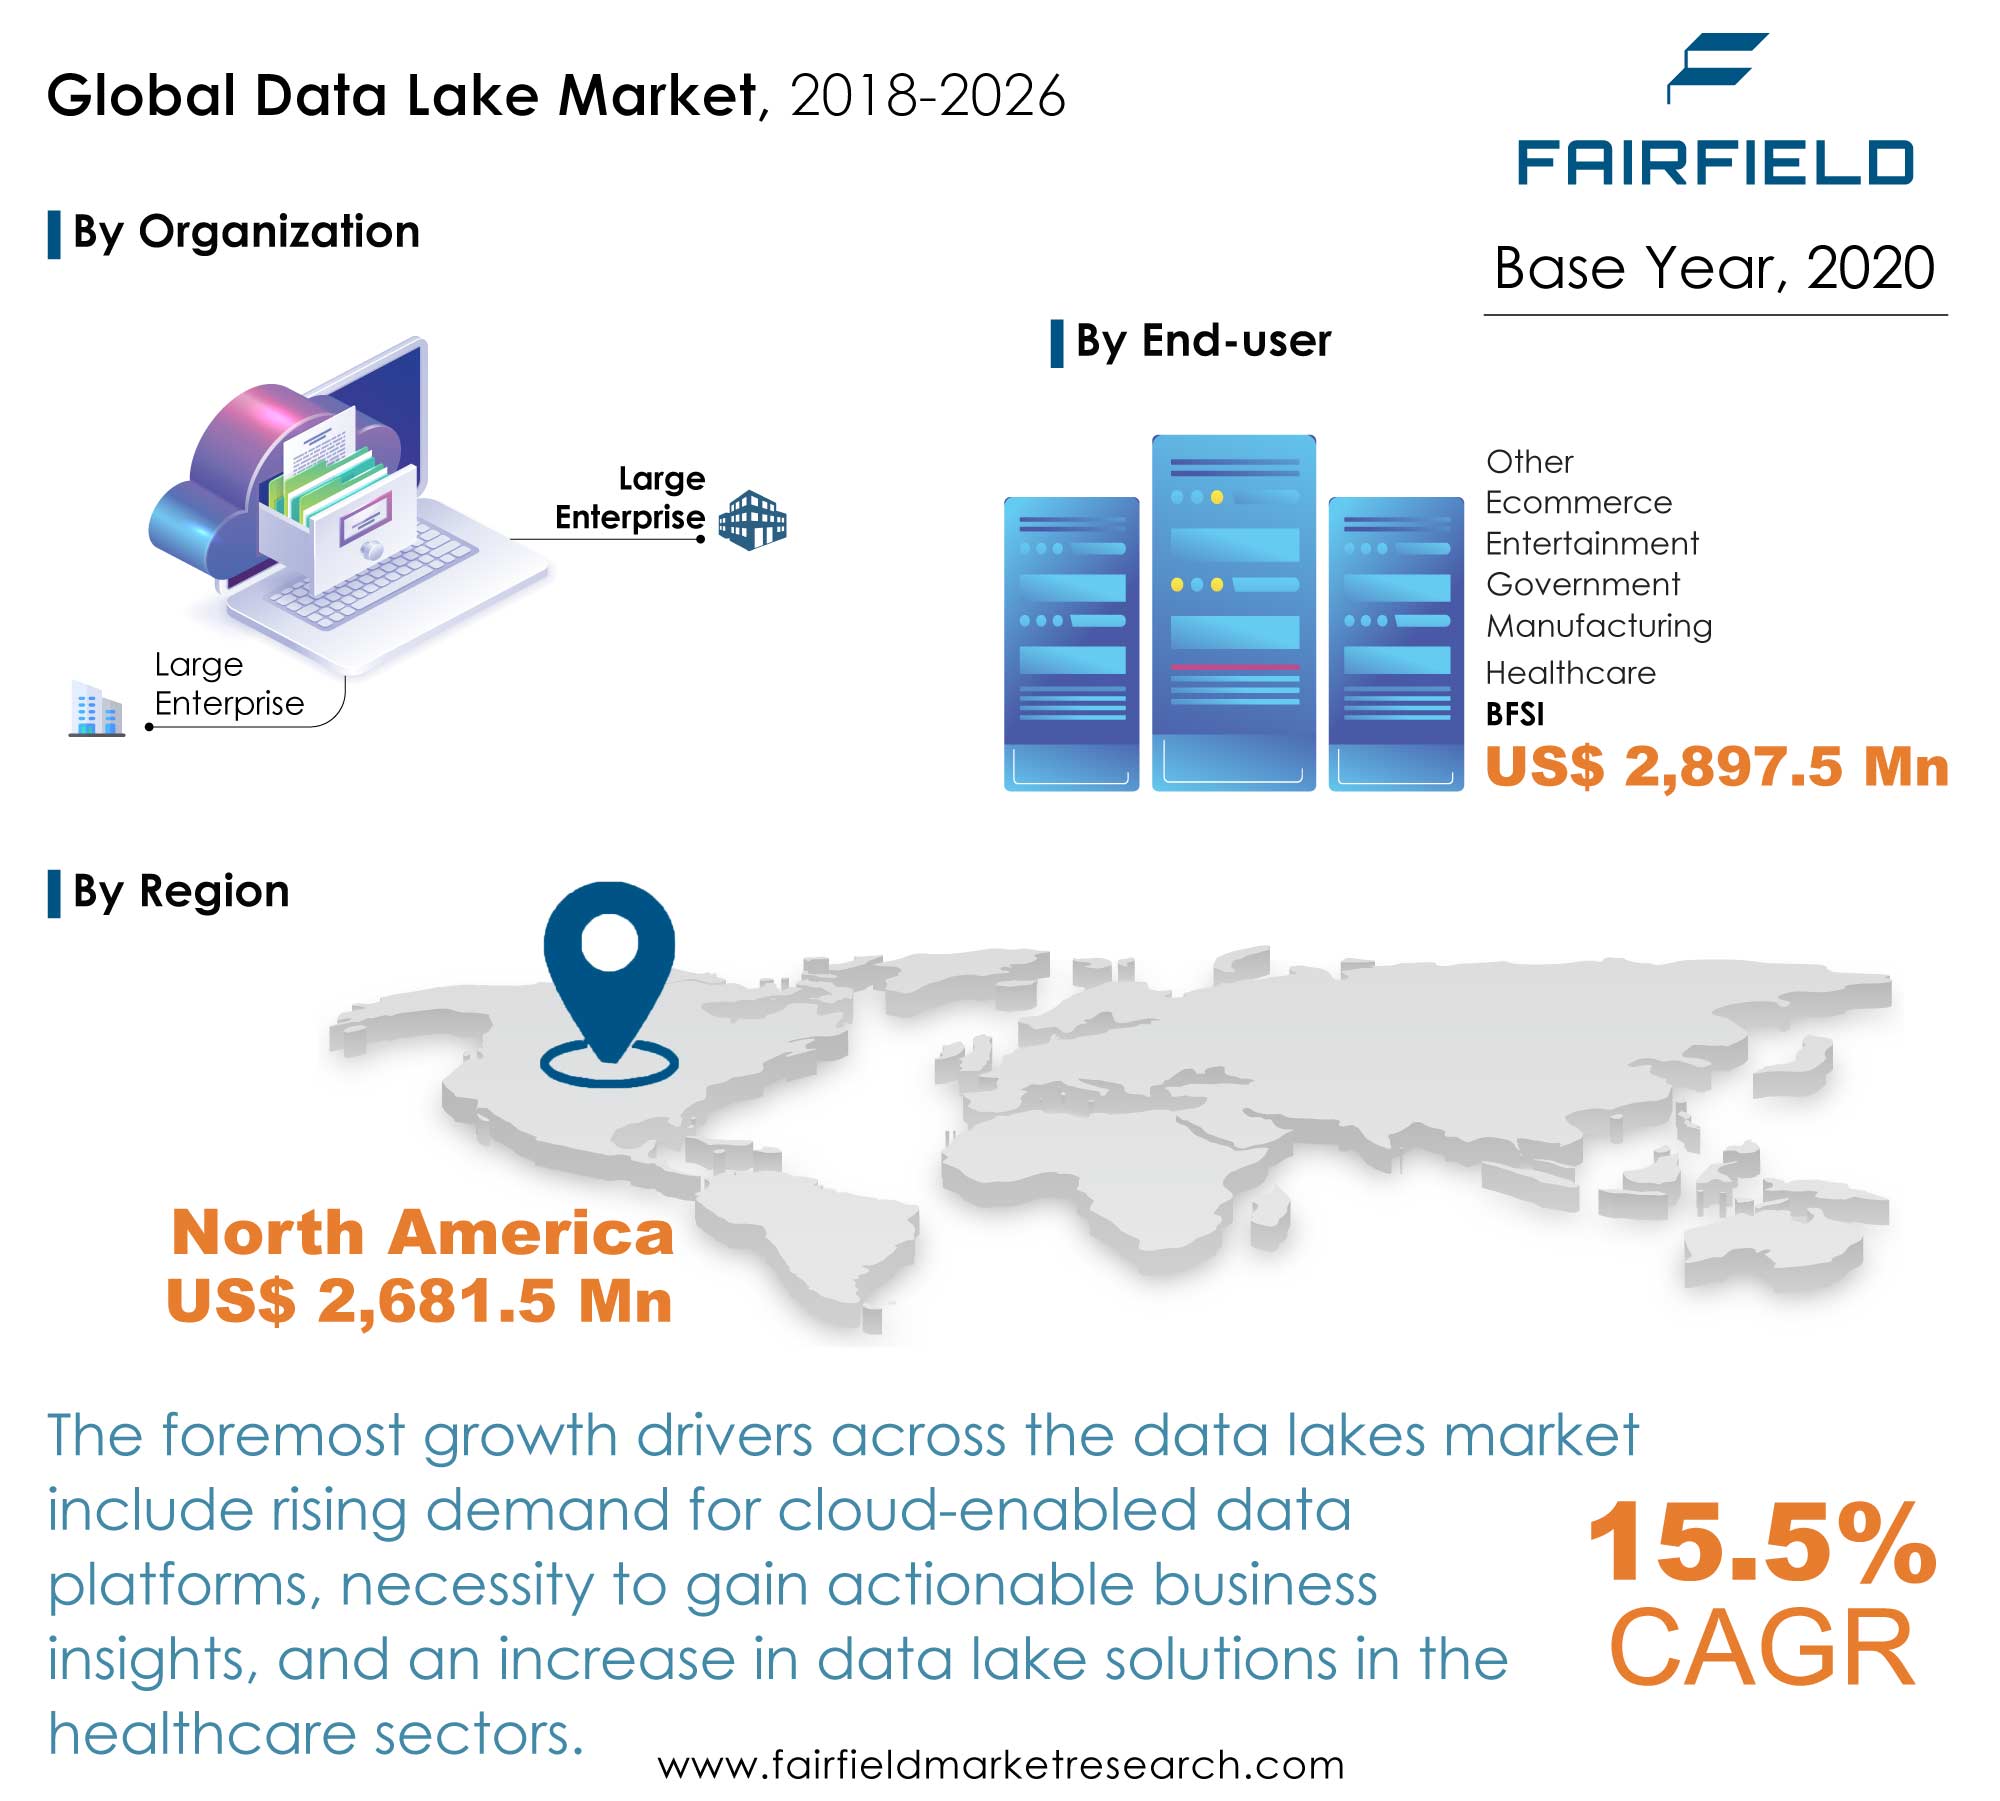 Data Lake Market